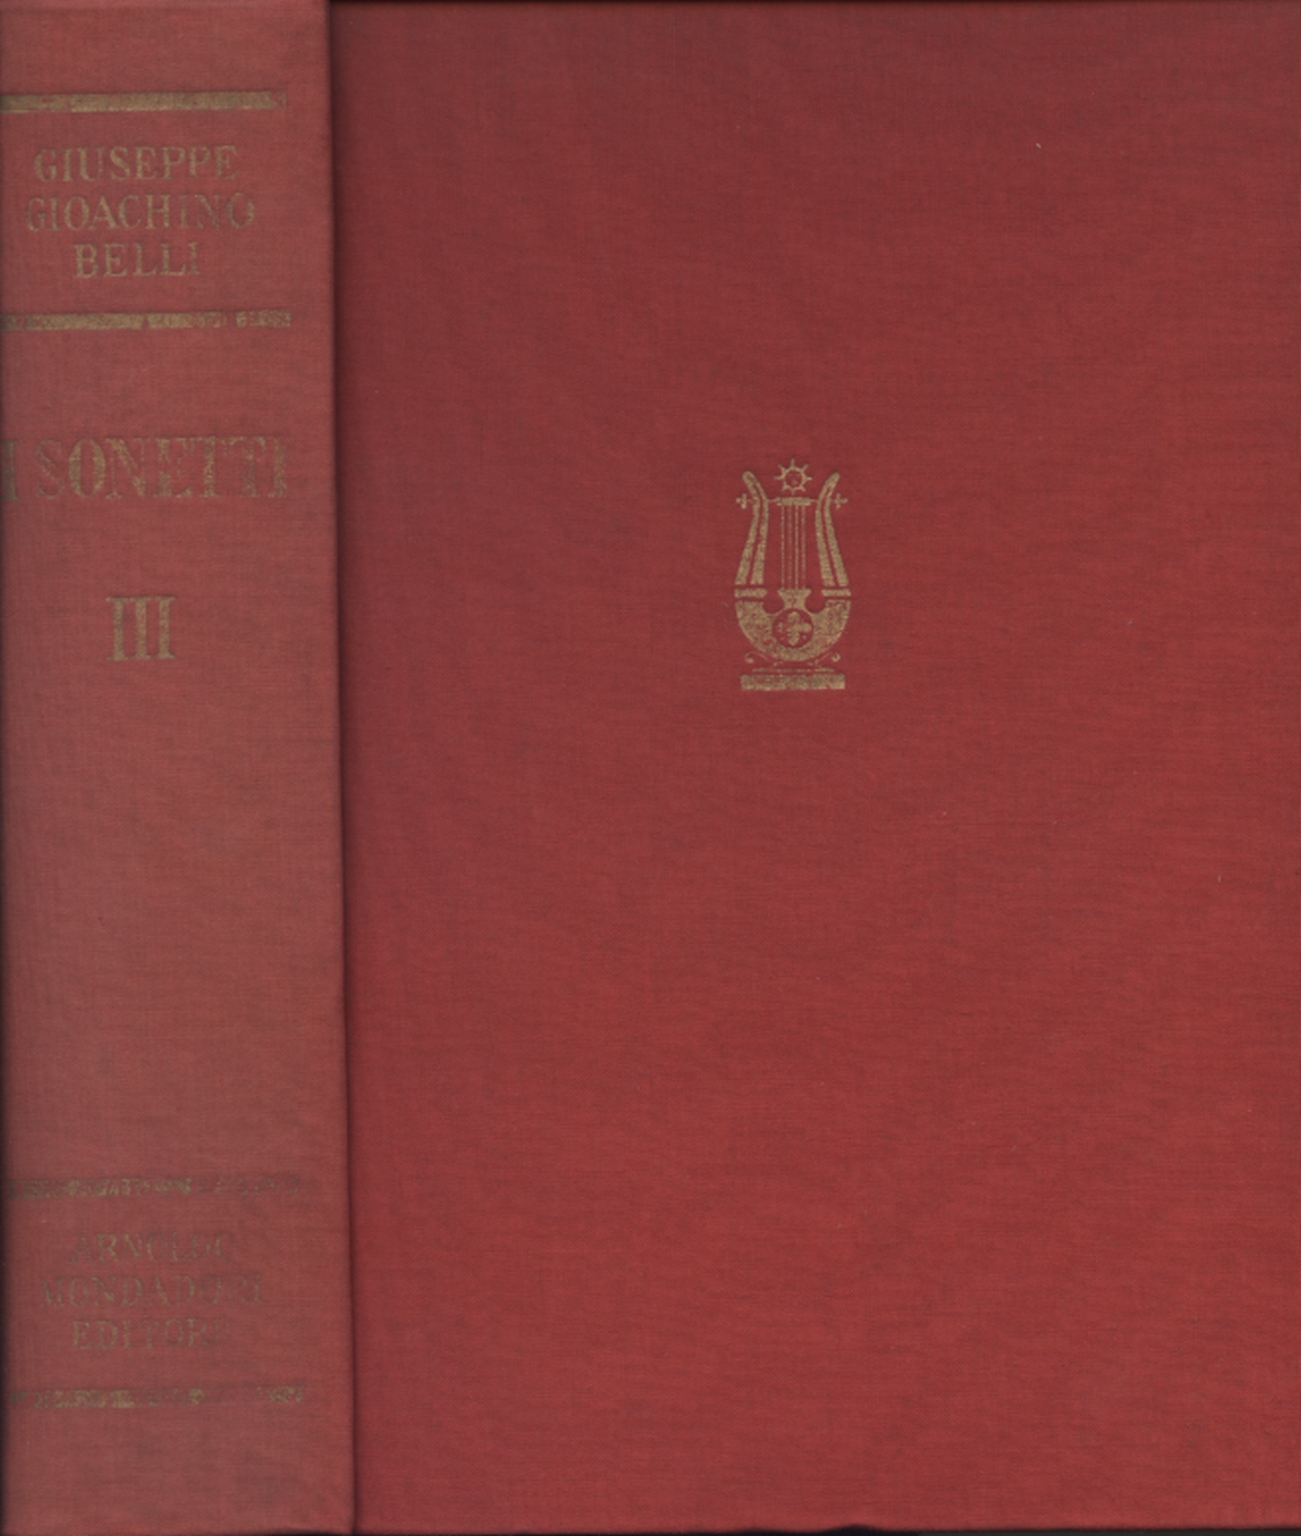 Les sonnets de Giuseppe Gioachino Belli (Volume tert Giorgio Vigolo